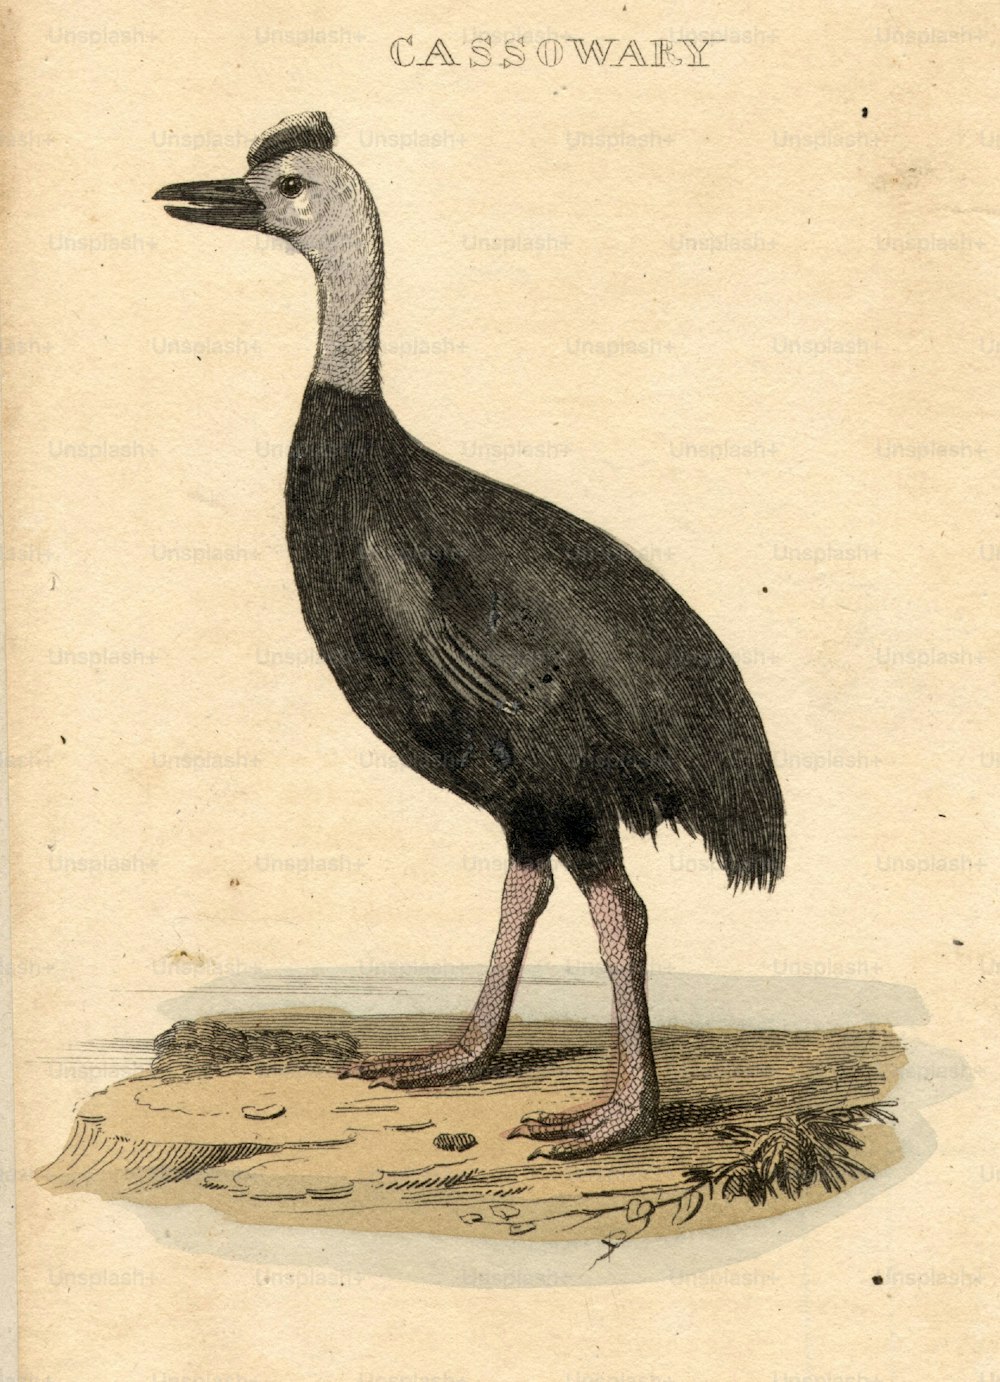 Hacia 1800: El casuario, un tipo de ave no voladora emparentada con el emú.  (Foto de Hulton Archive/Getty Images)